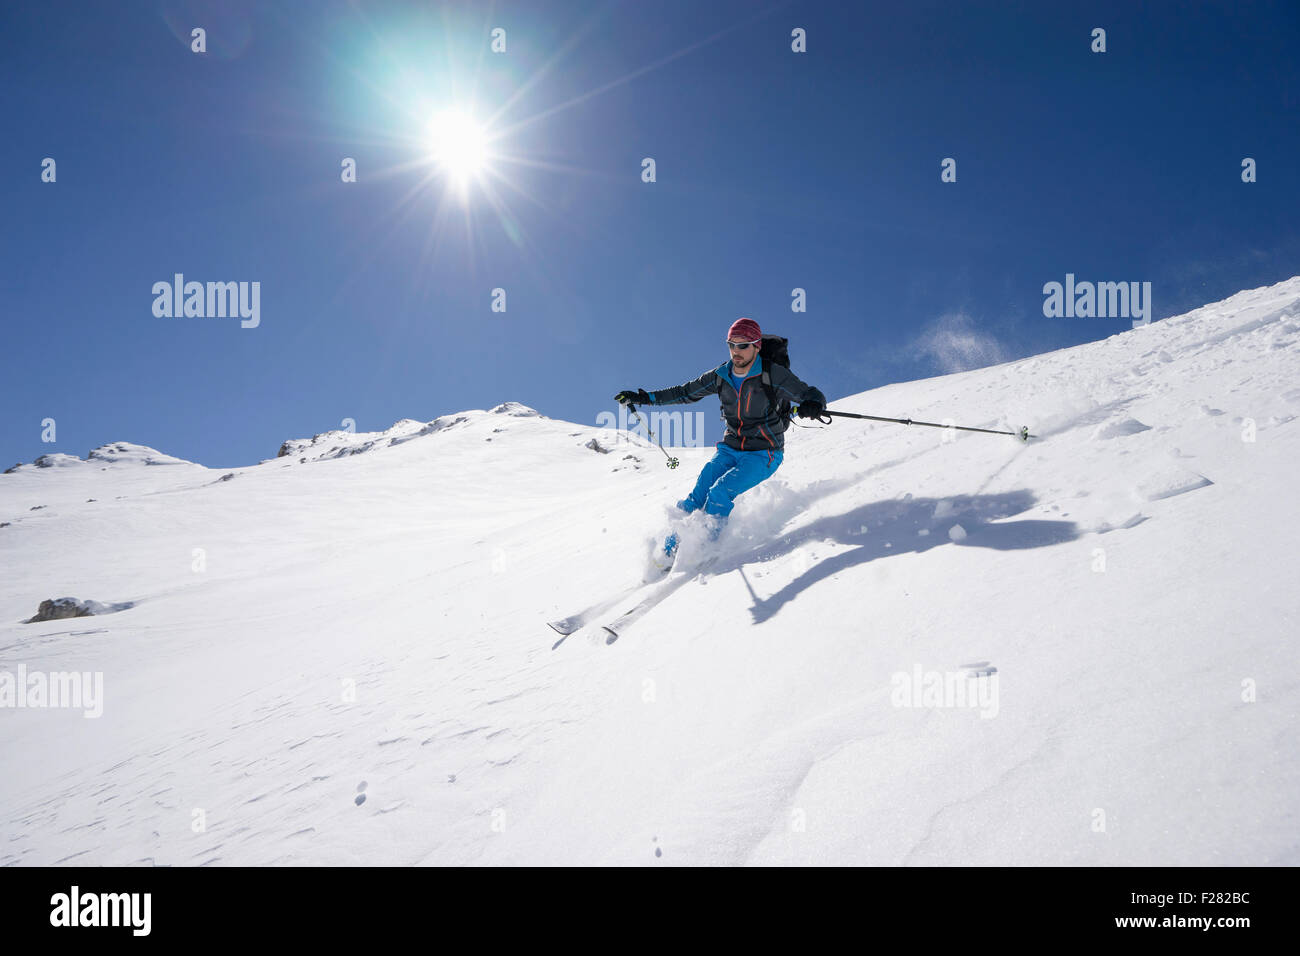 Man skiing, Val Gardena, Trentino-Alto Adige, Italy Stock Photo